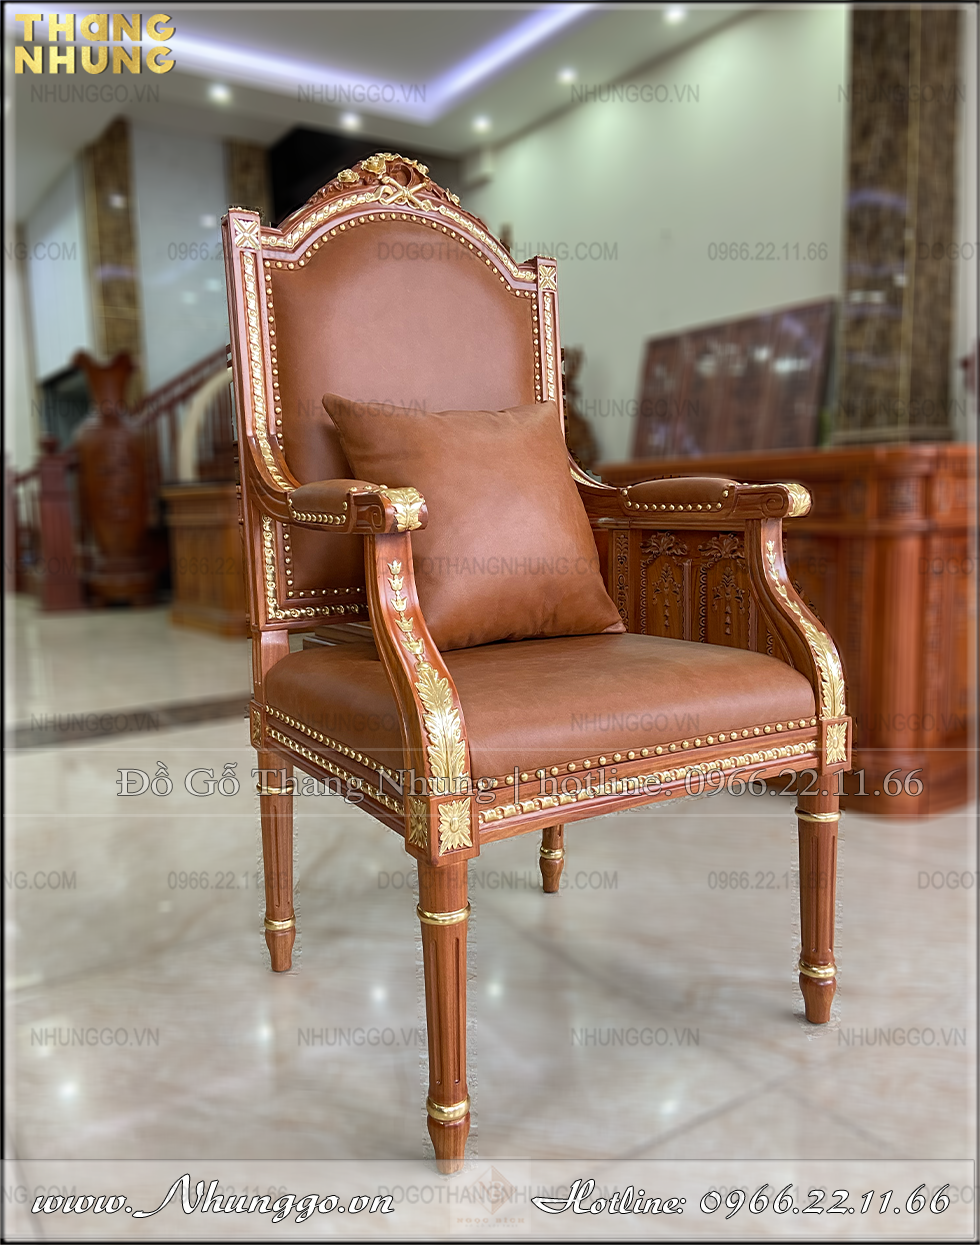 Mẫu ghế chủ tịch gỗ tự nhiên bọc da nâu được làm theo phong cách tân cổ điển theo bản gốc của ghế tổng thống Pu tin